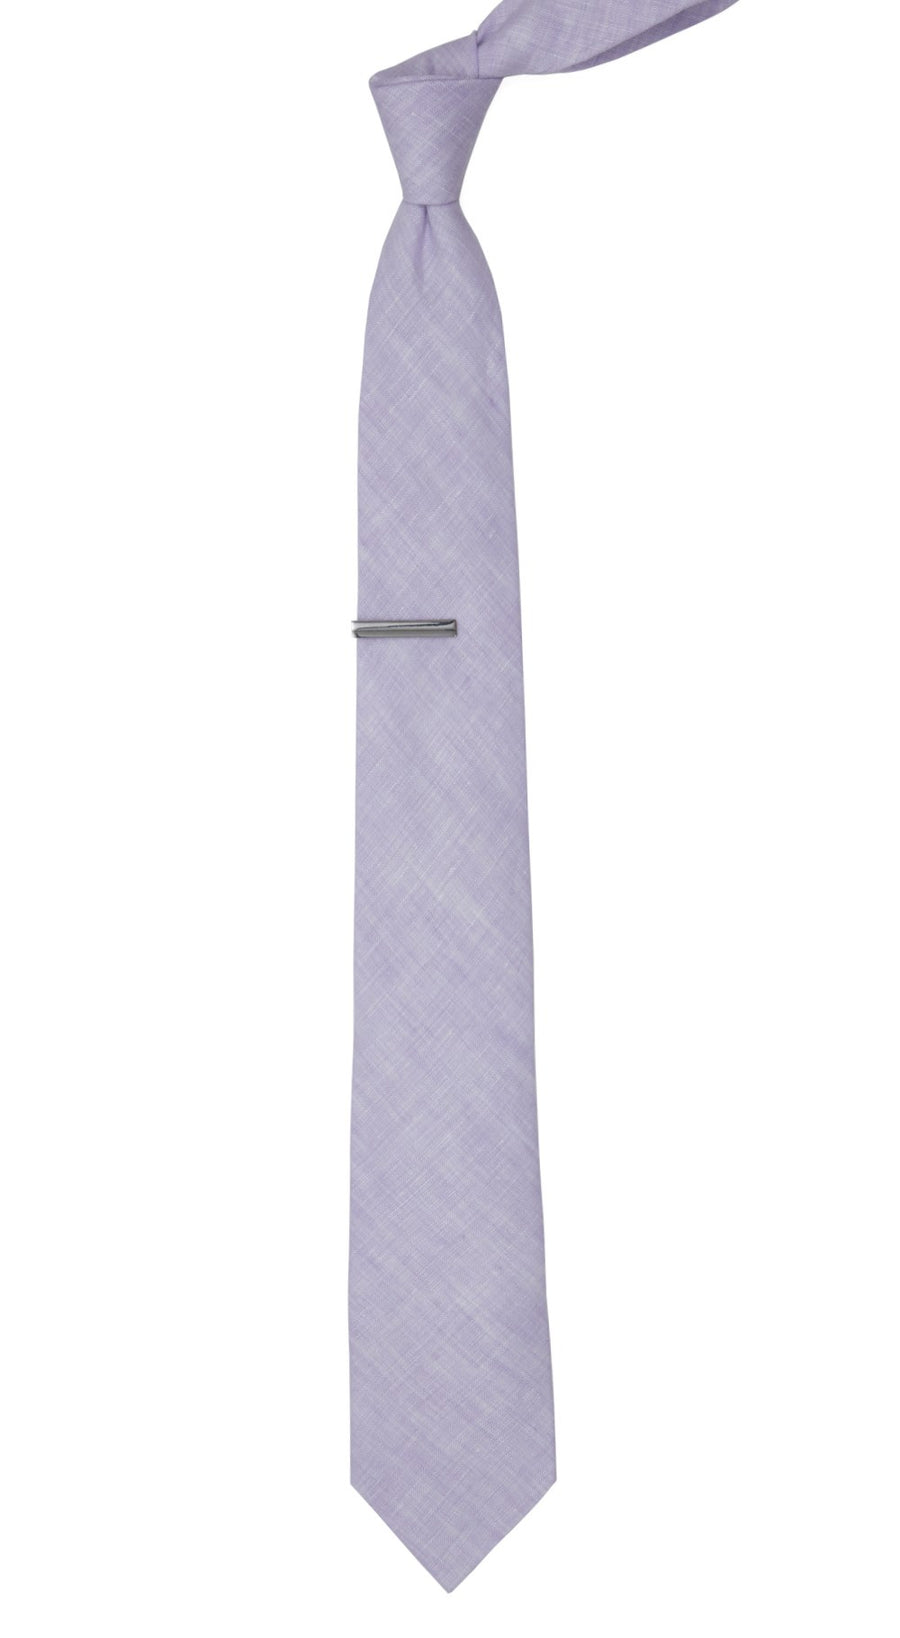 South End Solid Lavender Tie | Linen Ties | Tie Bar